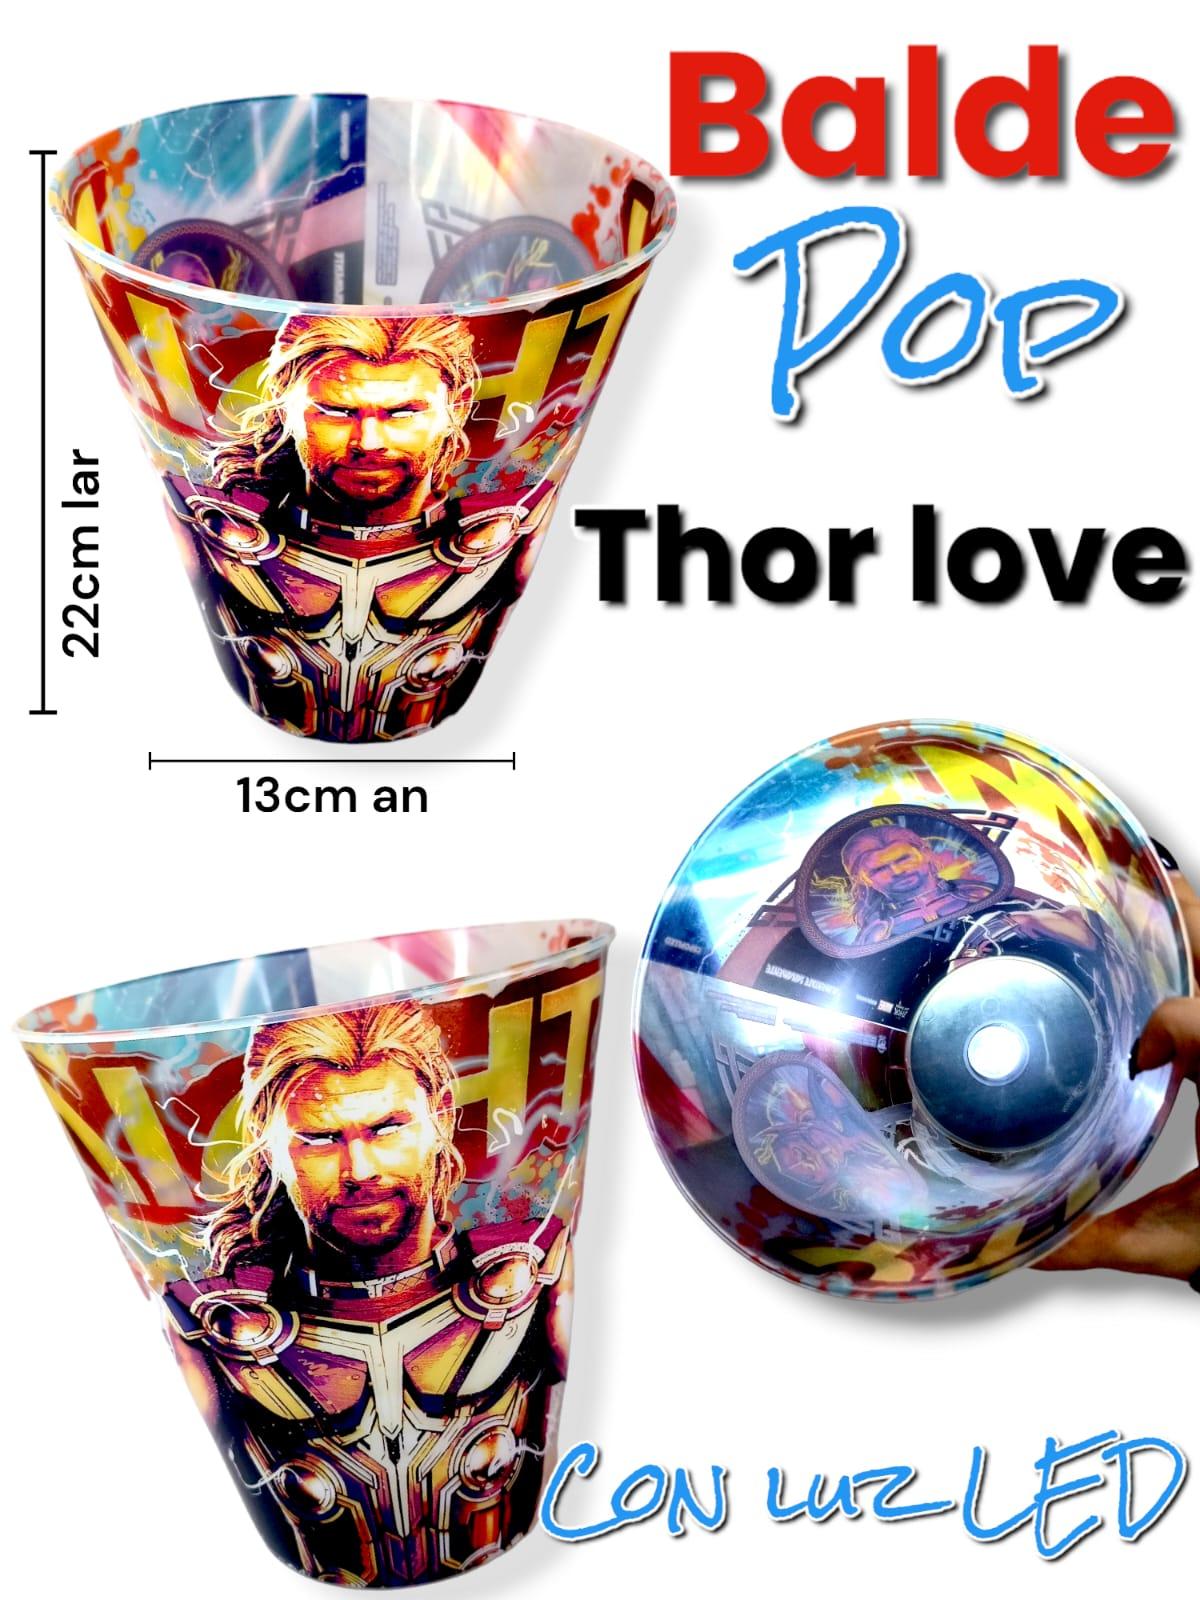 BALDE Pop Con Luz Led Thor Love